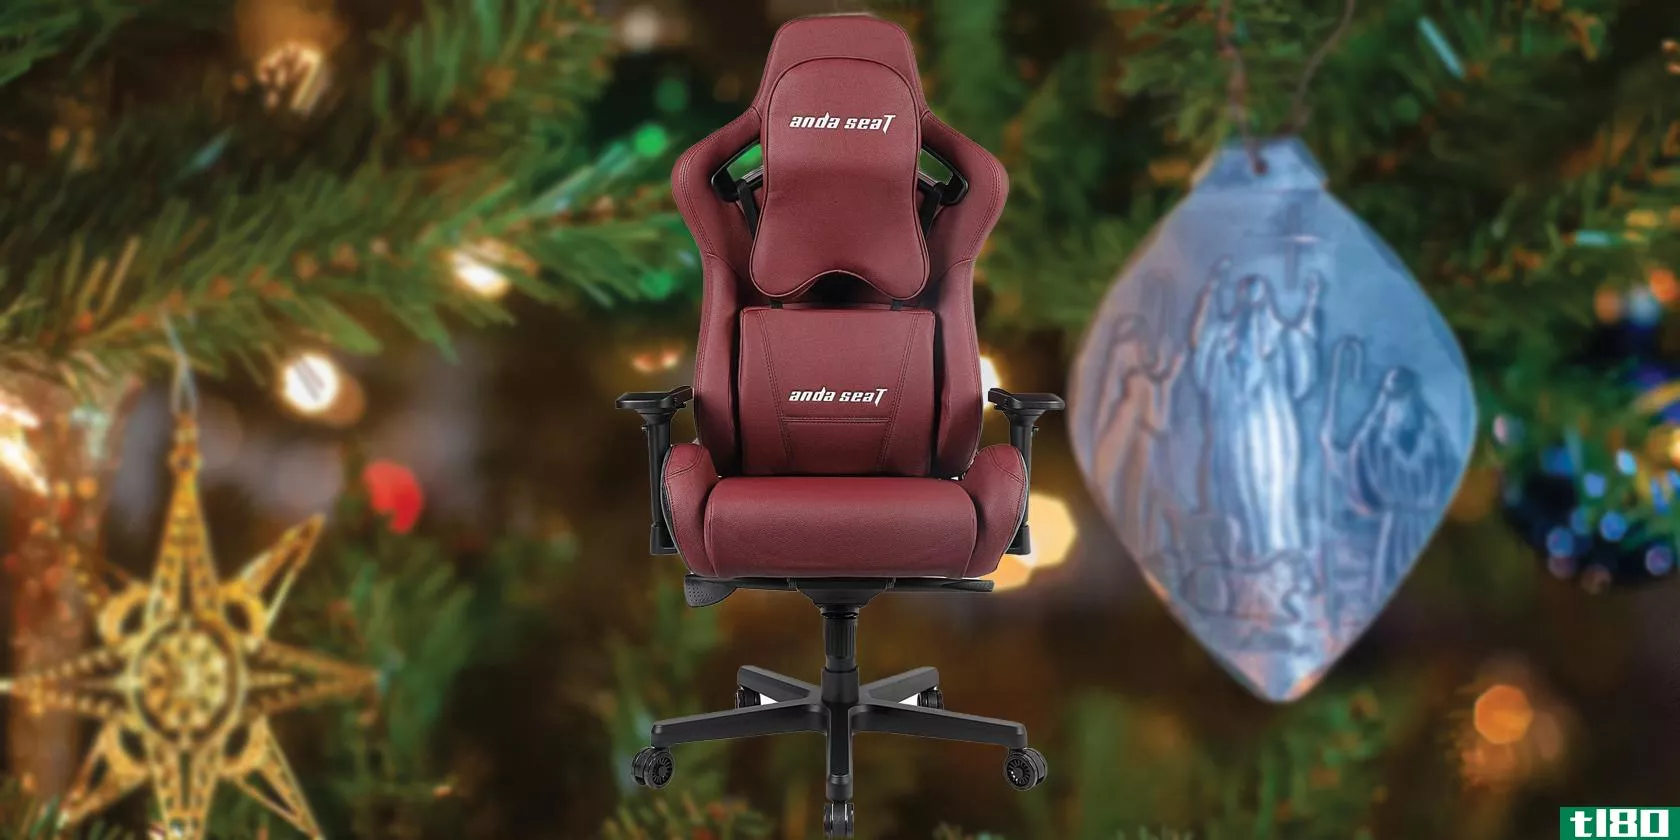 Andaseat Kaiser 2 gaming chair